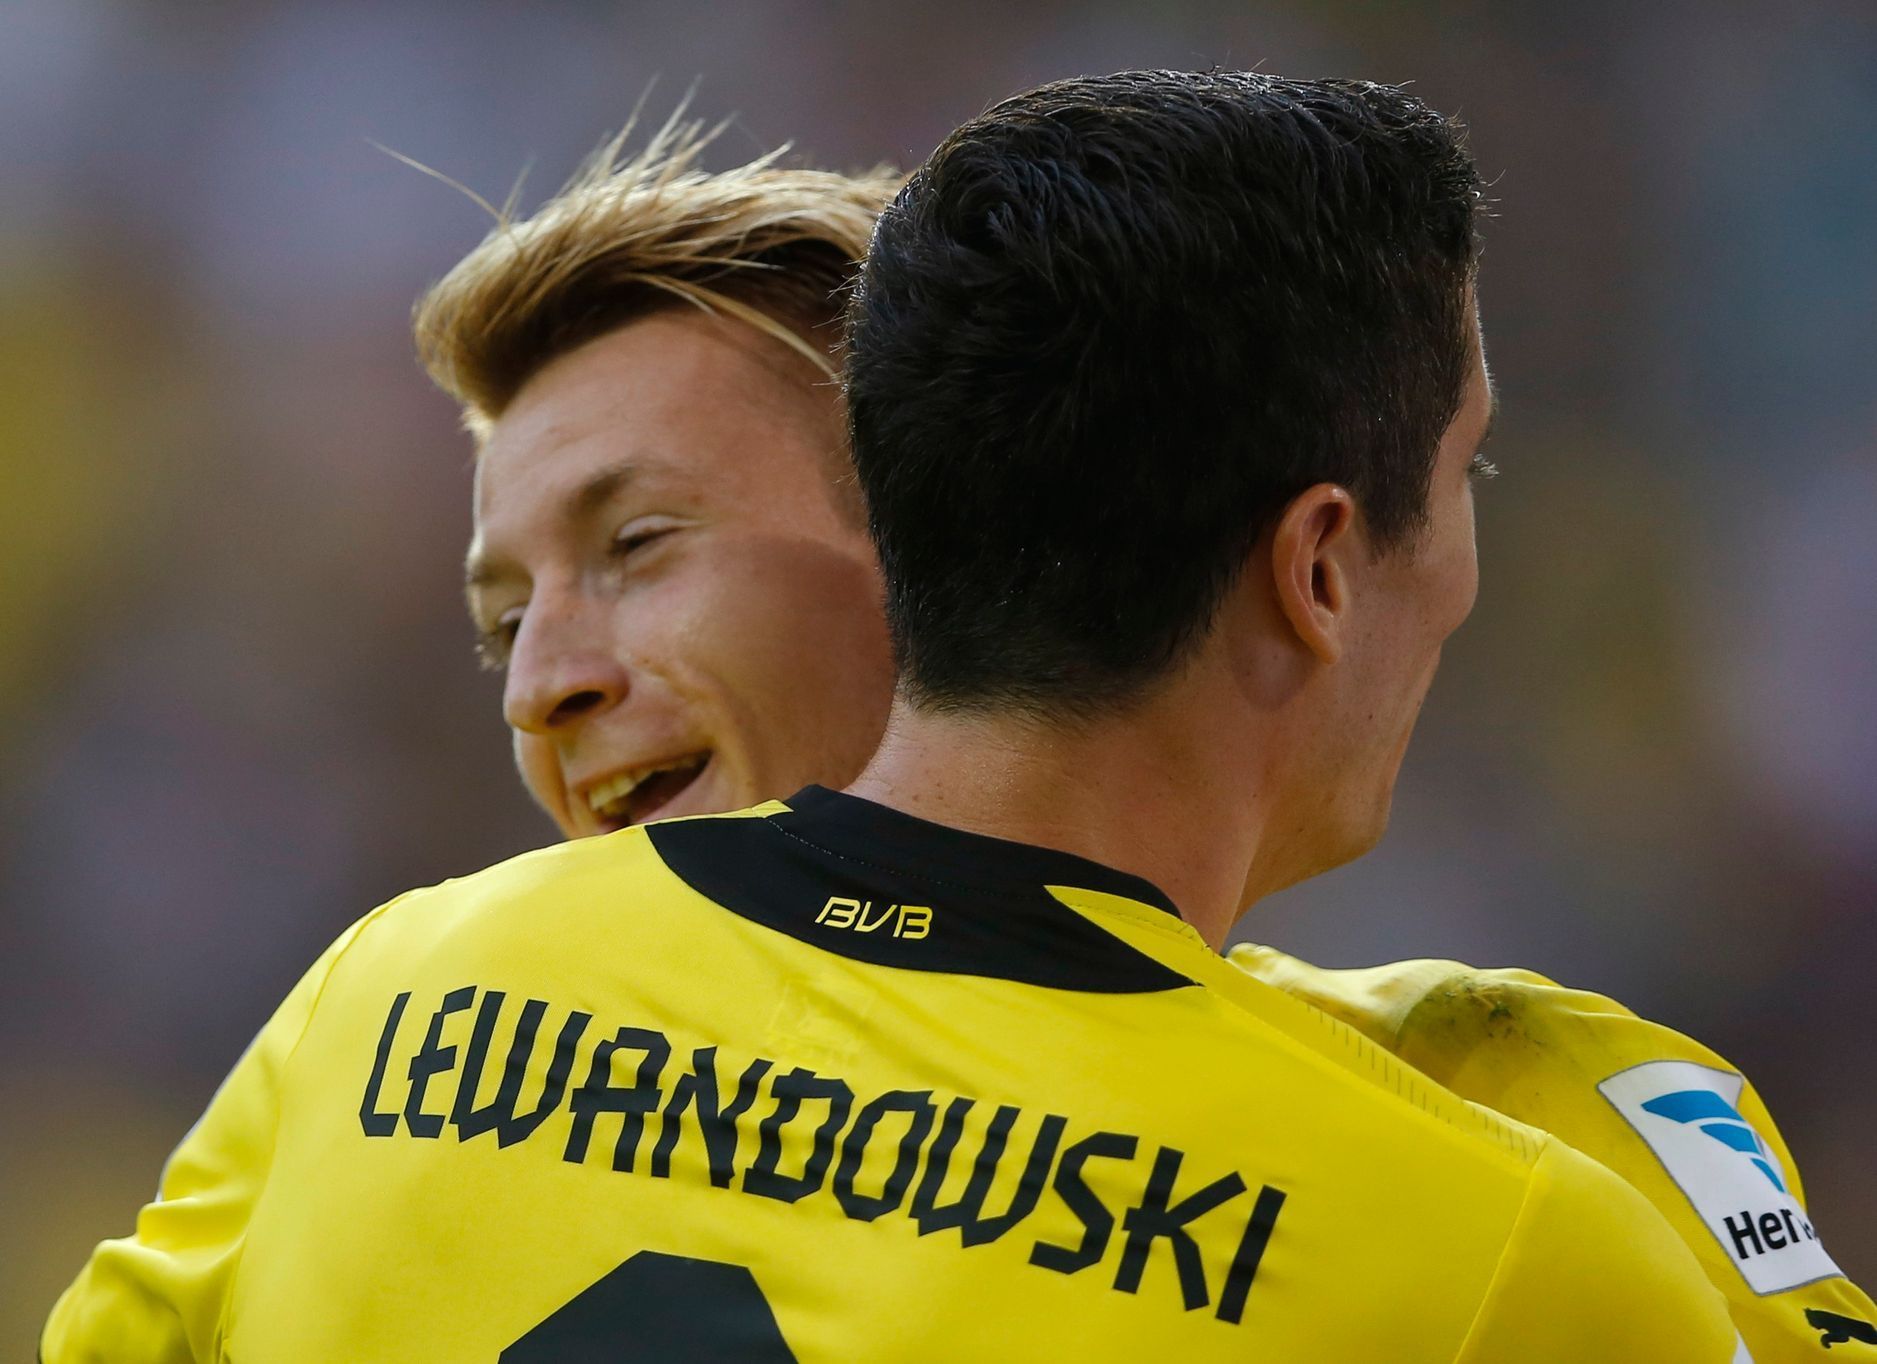 Fotbal, německý Superpohár, Dortmund - Bayern: Marco Reus a Robert Lewandowski